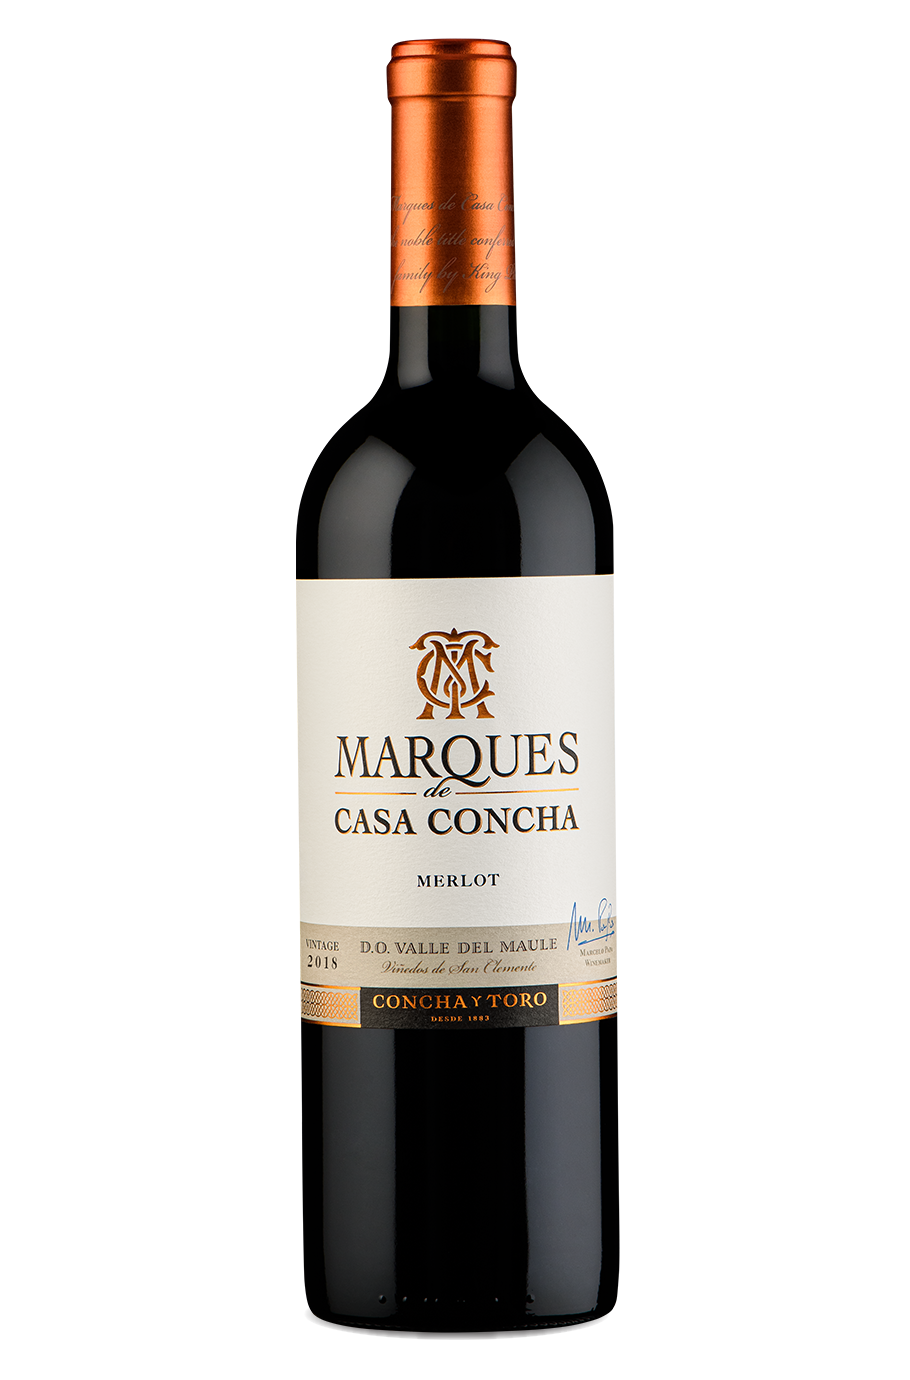 Concha y Toro Marques de Casa Concha Merlot 750ml 2018